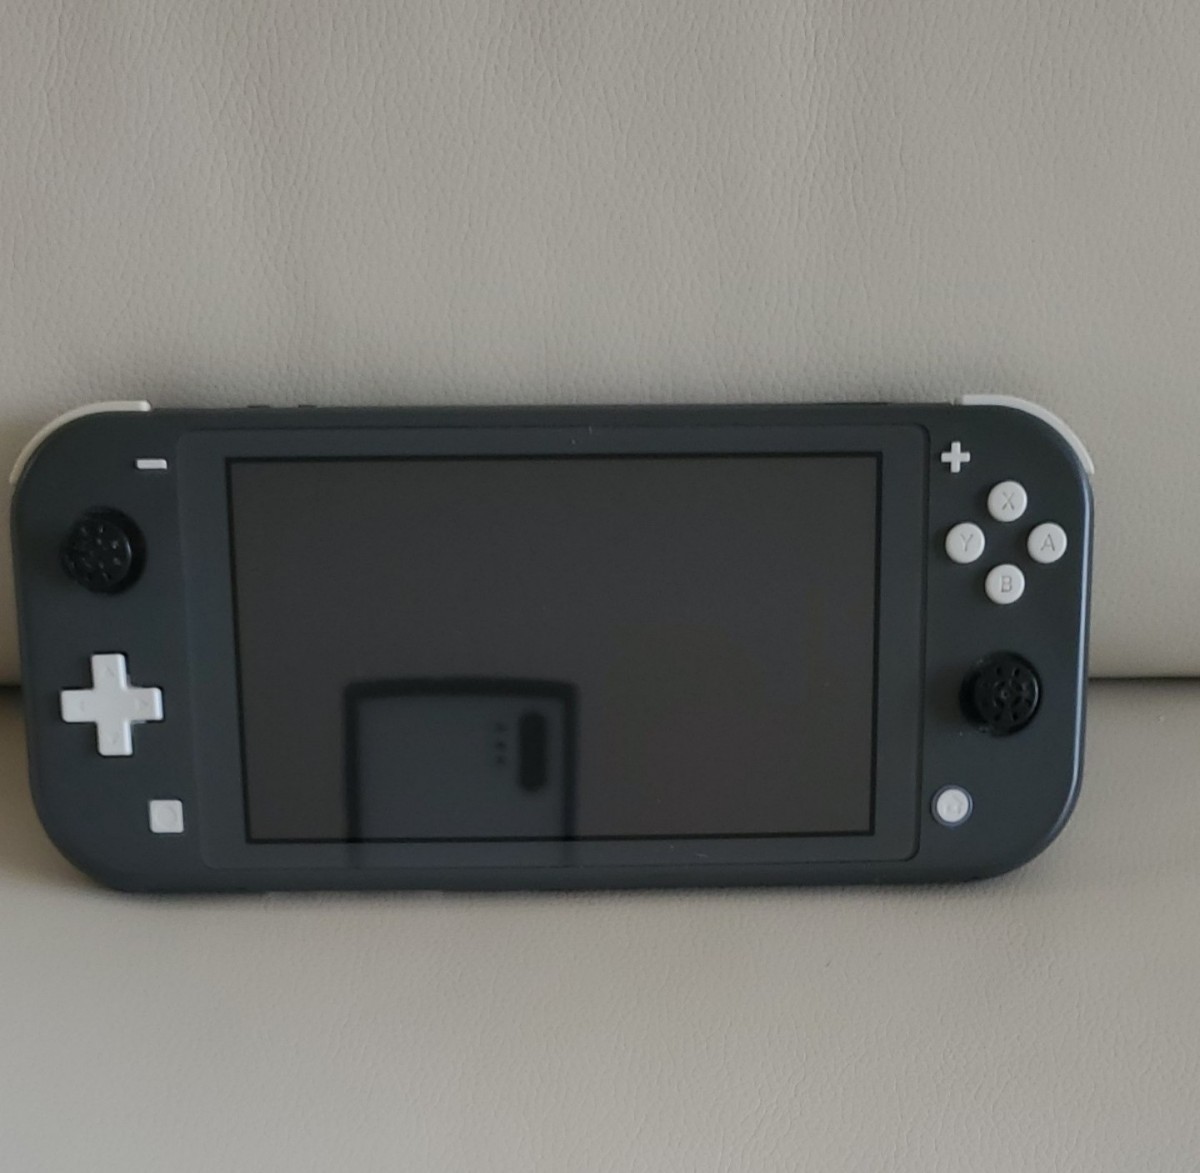 お中元 Nintendo Switch Lite グレー corp.ngs.uz